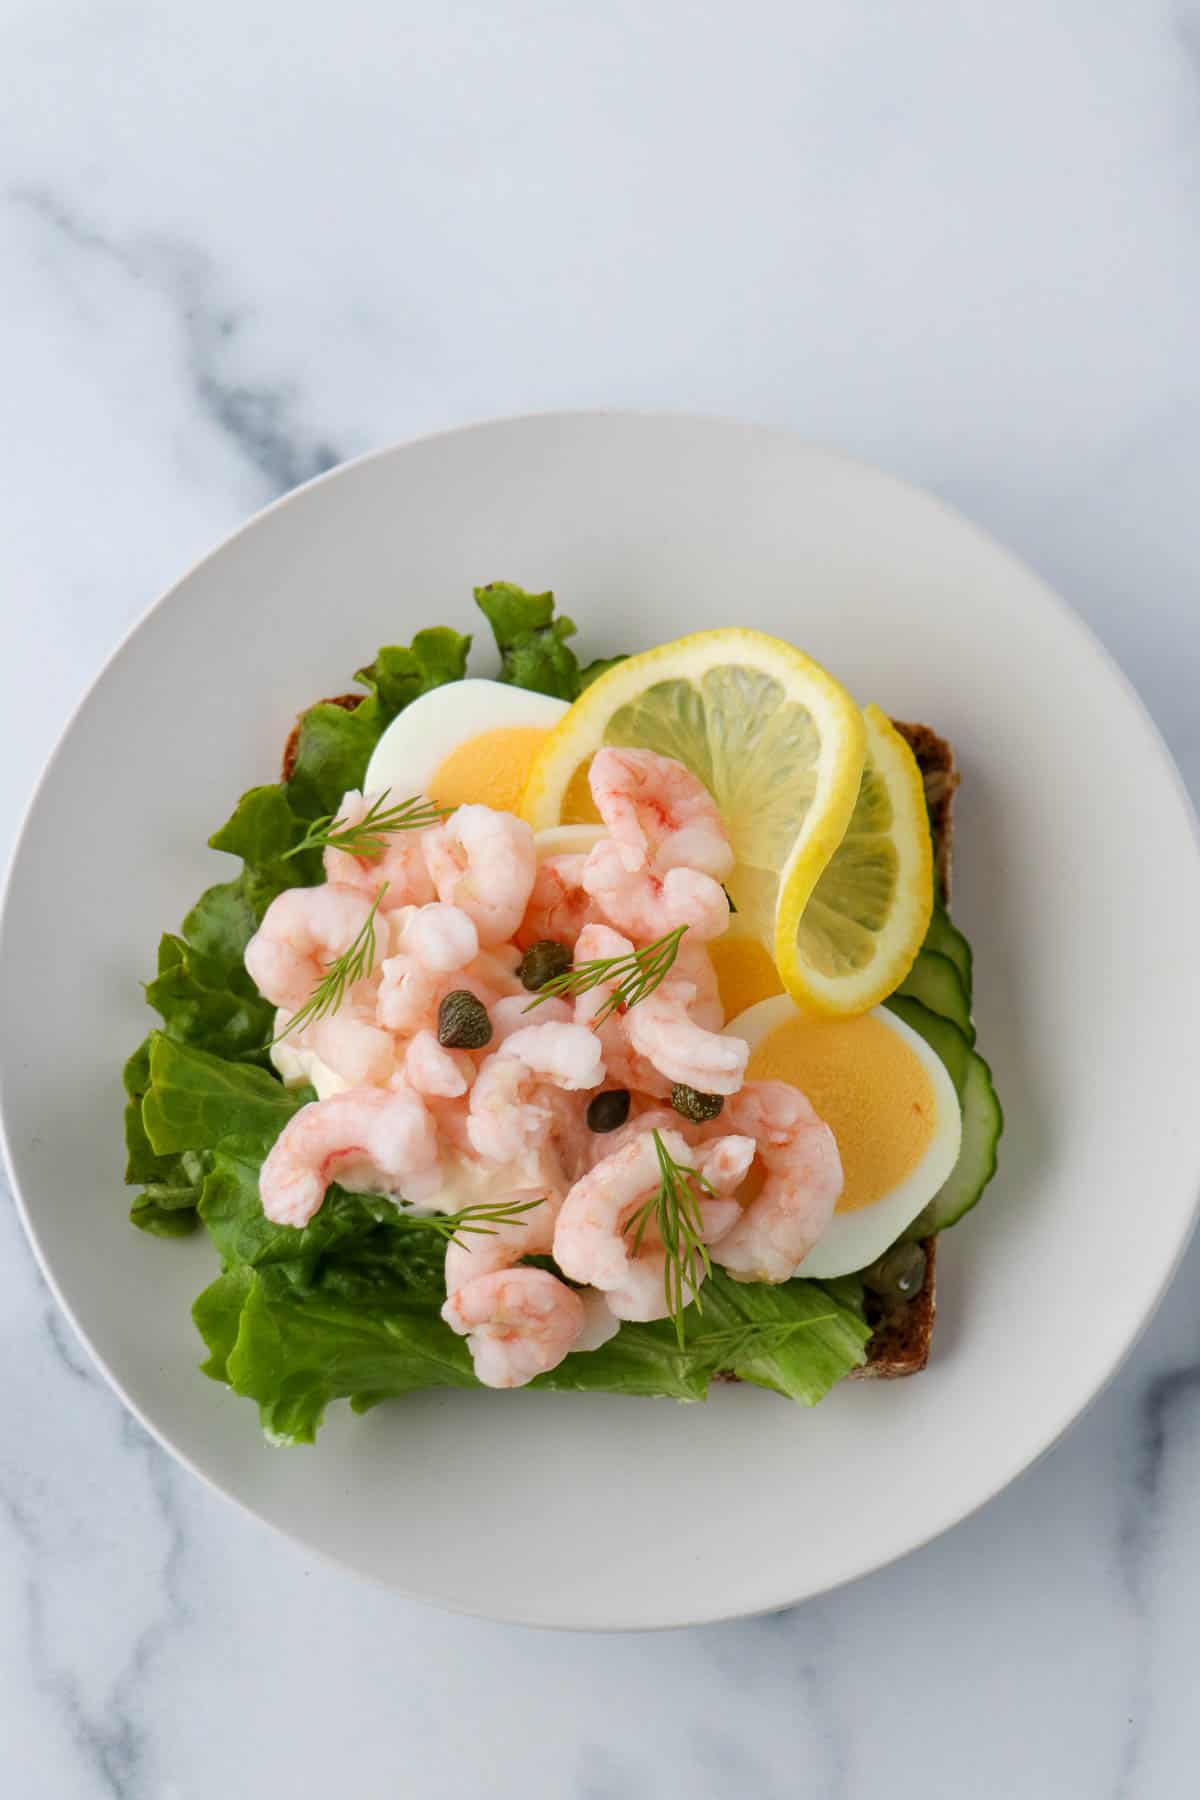 Shrimp smørrebrød with eggs, lemon and lettuce.